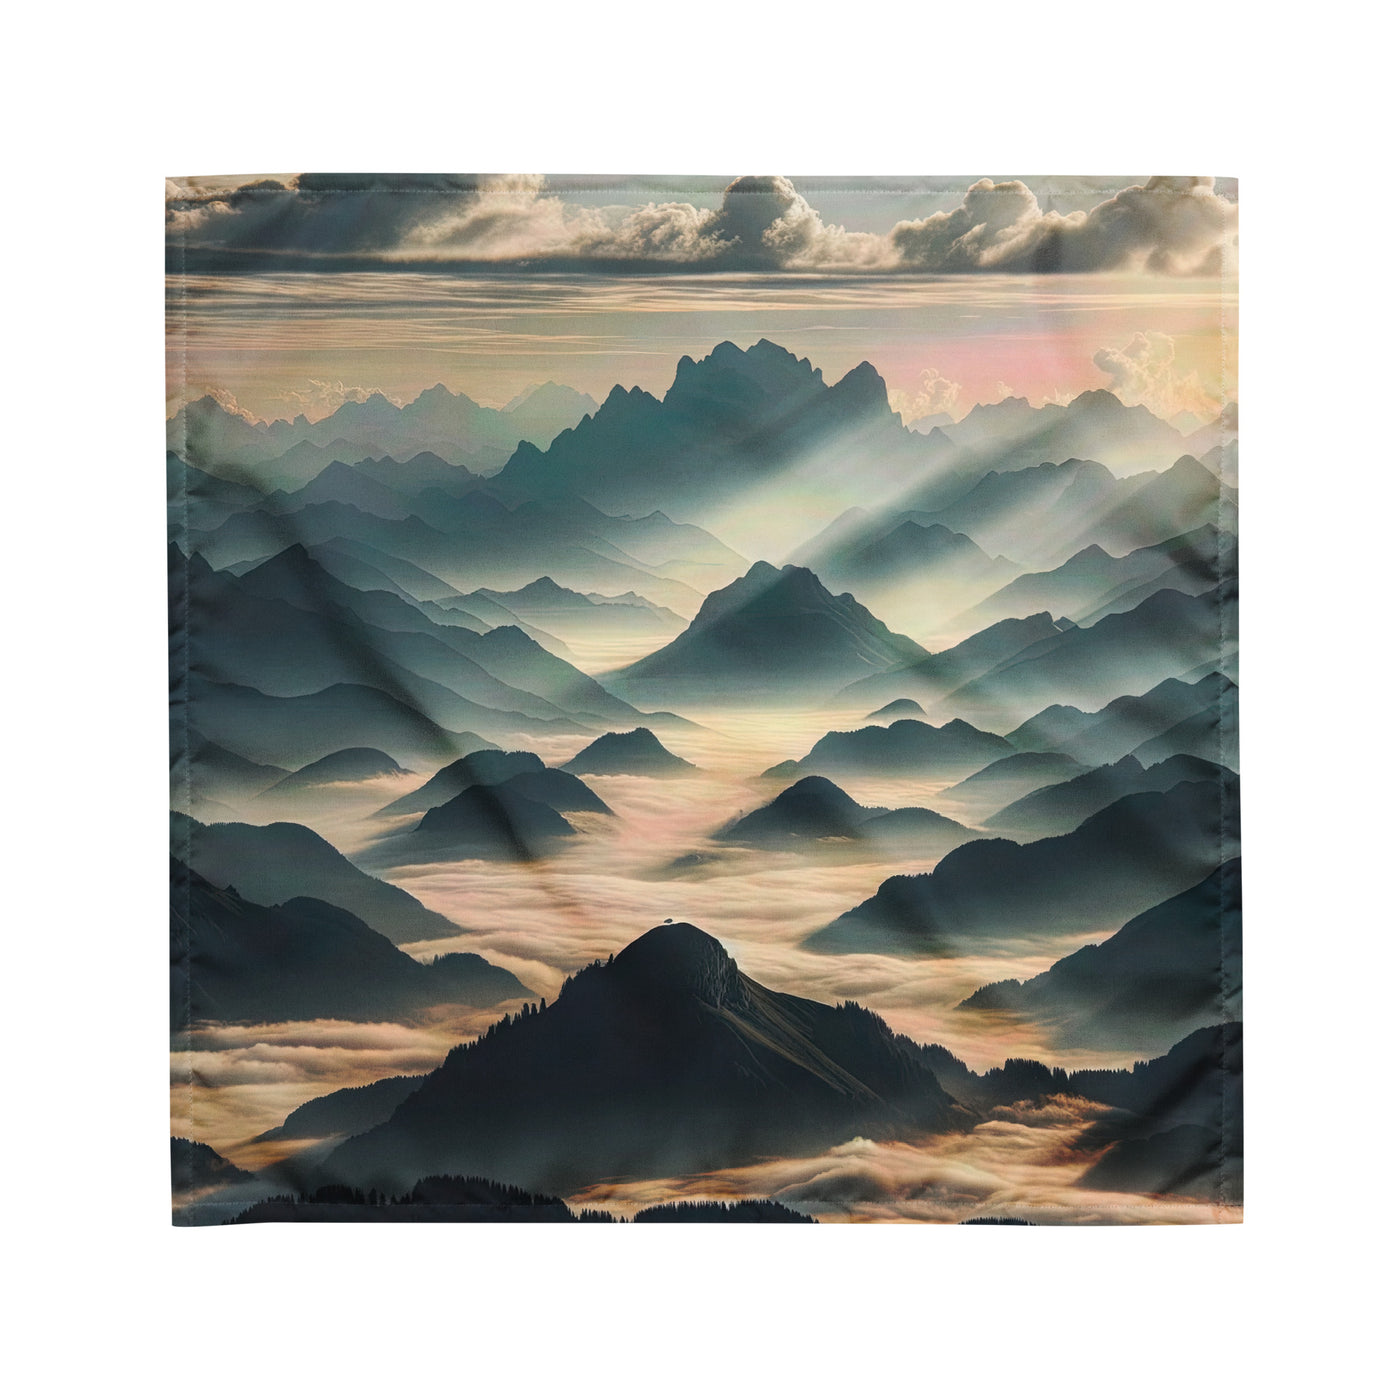 Foto der Alpen im Morgennebel, majestätische Gipfel ragen aus dem Nebel - Bandana (All-Over Print) berge xxx yyy zzz M